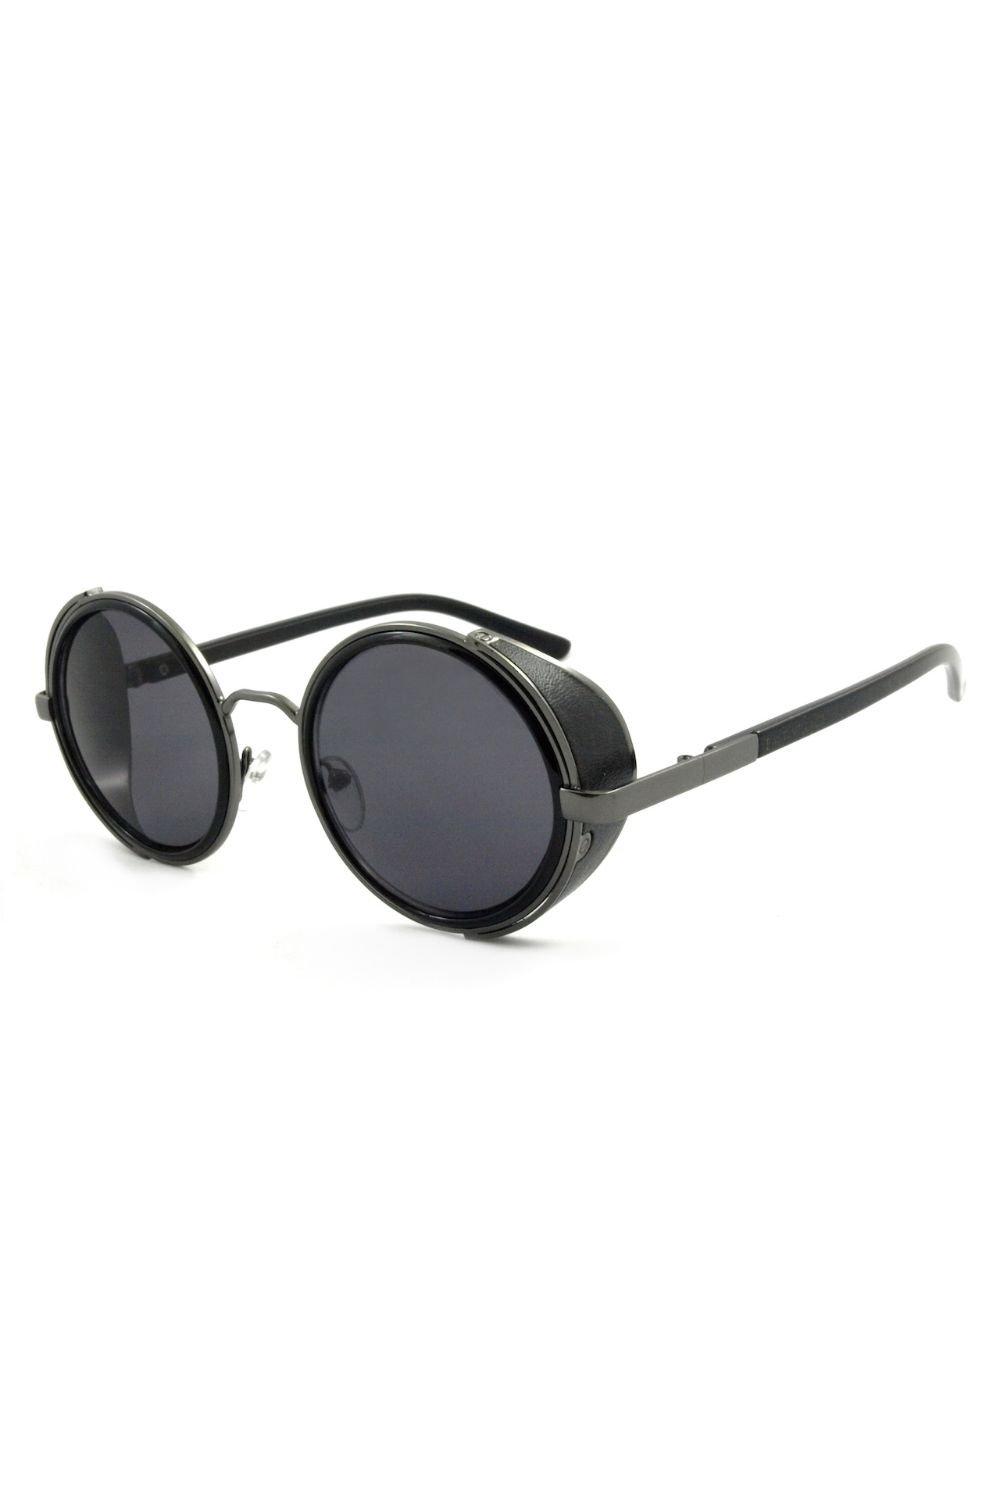 village susegat Круглые солнцезащитные очки Freeman East Village, черный